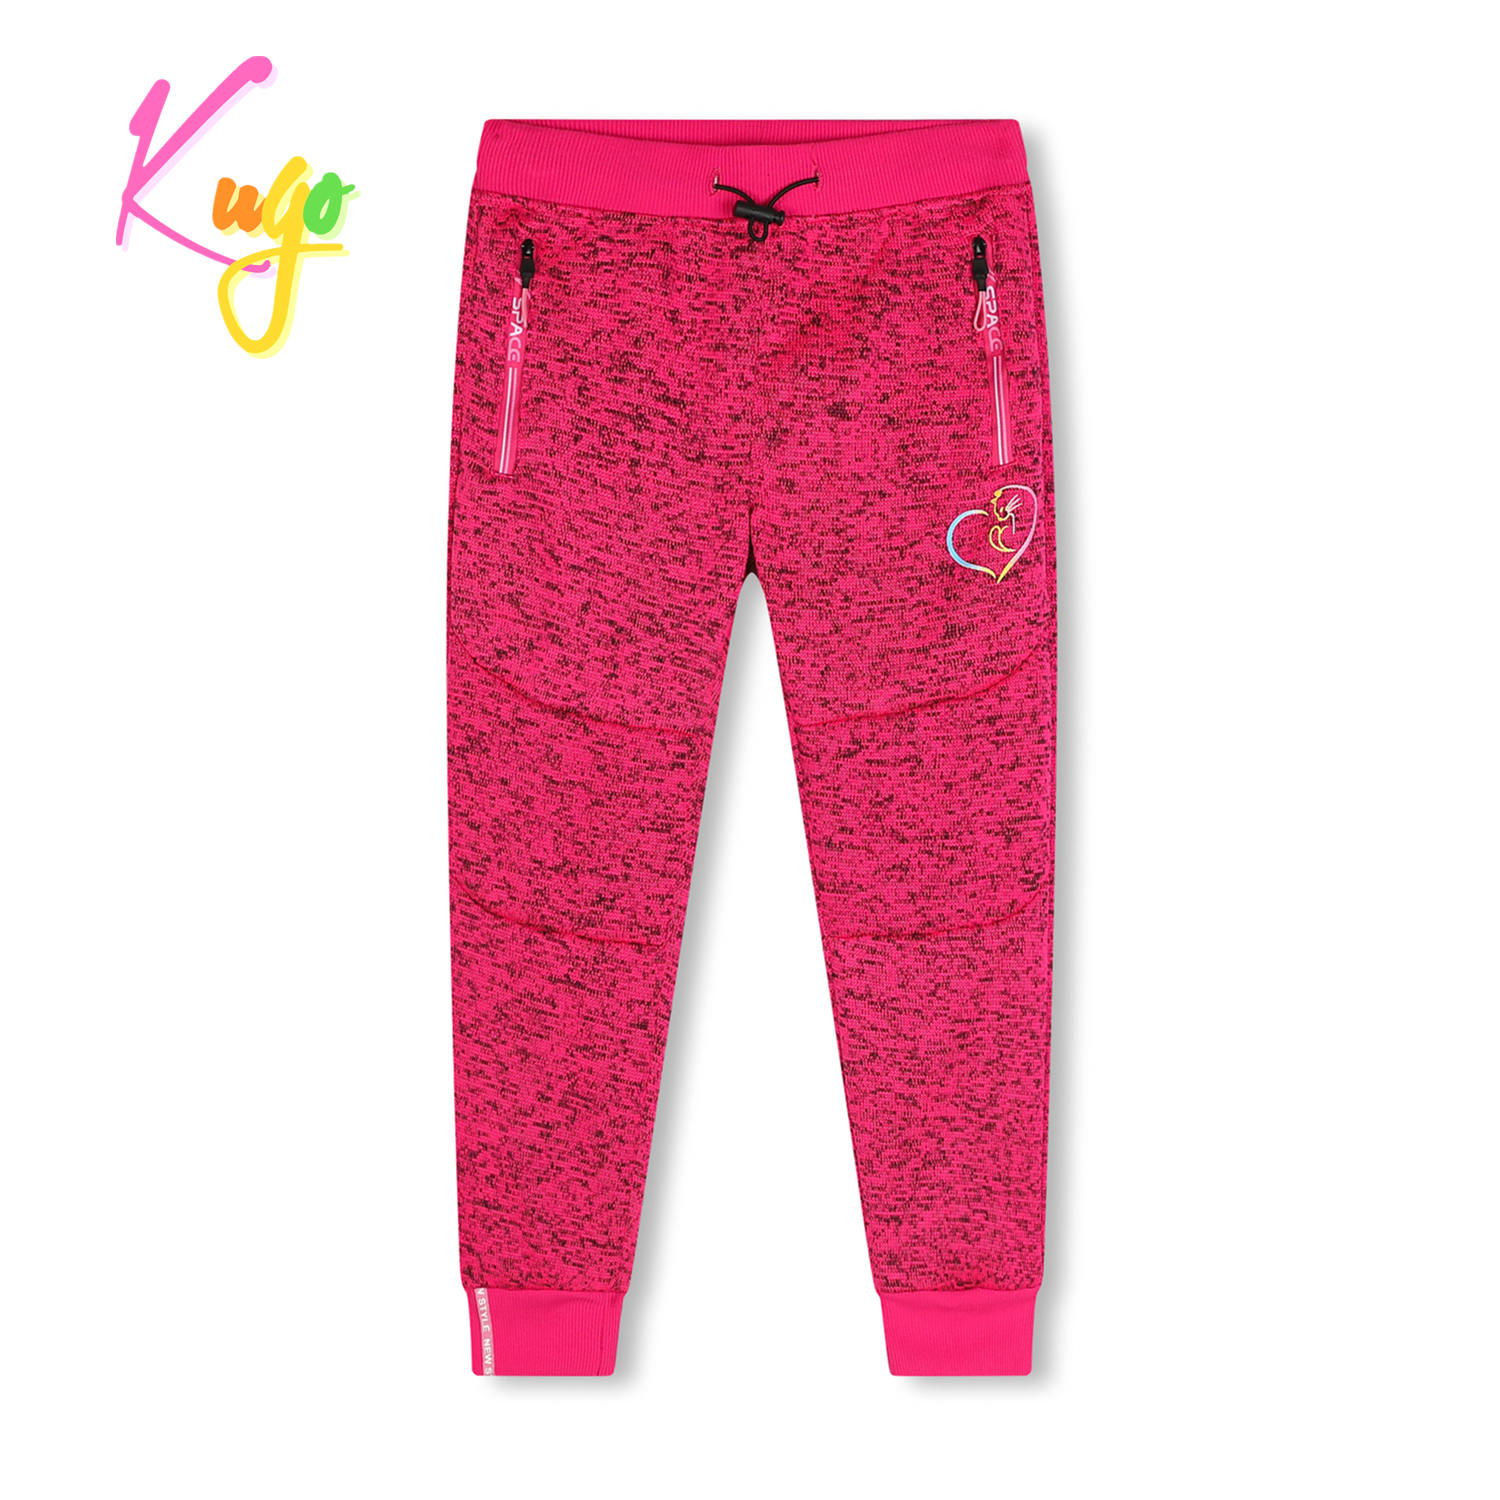 Dívčí outdoorové tepláky - KUGO HT1925, růžová Barva: Růžová, Velikost: 116